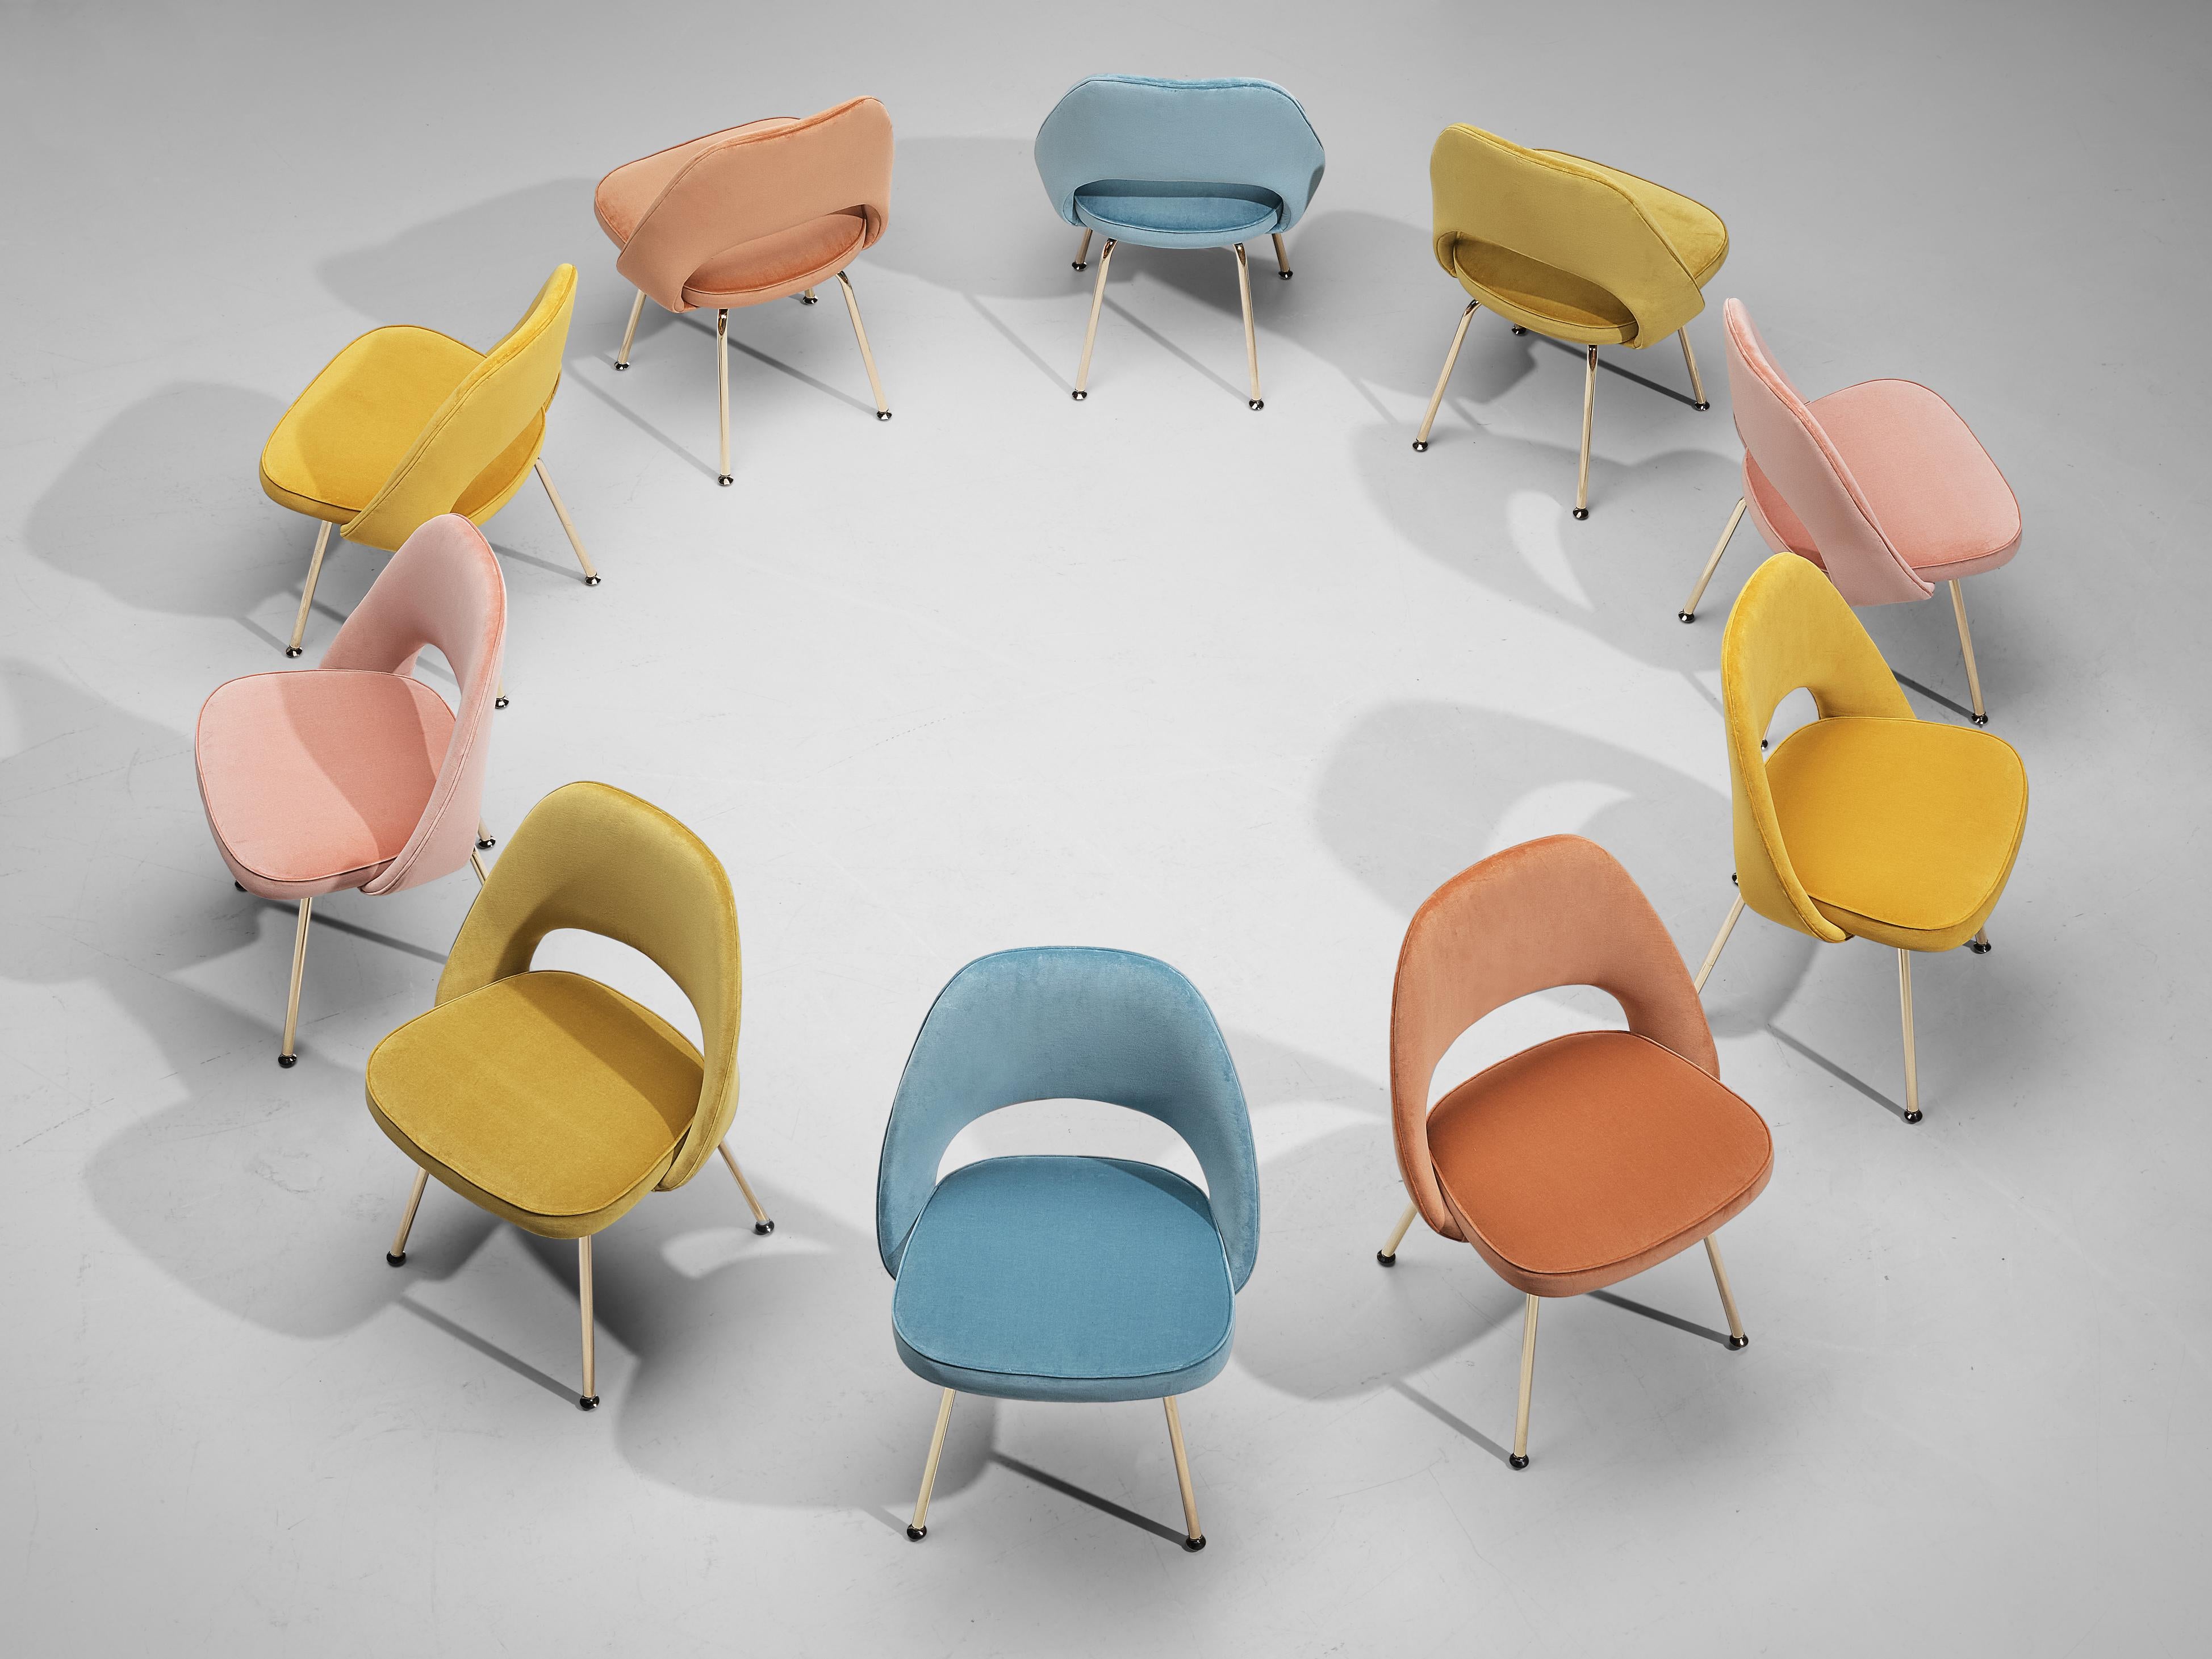 Eero Saarinen pour Knoll, ensemble de dix chaises de salle à manger, modèle 72, acier recouvert de laiton, revêtement en velours, États-Unis, design 1948

Ensemble de chaises de forme organique conçues par Eero Saarinen. Ce modèle emblématique est